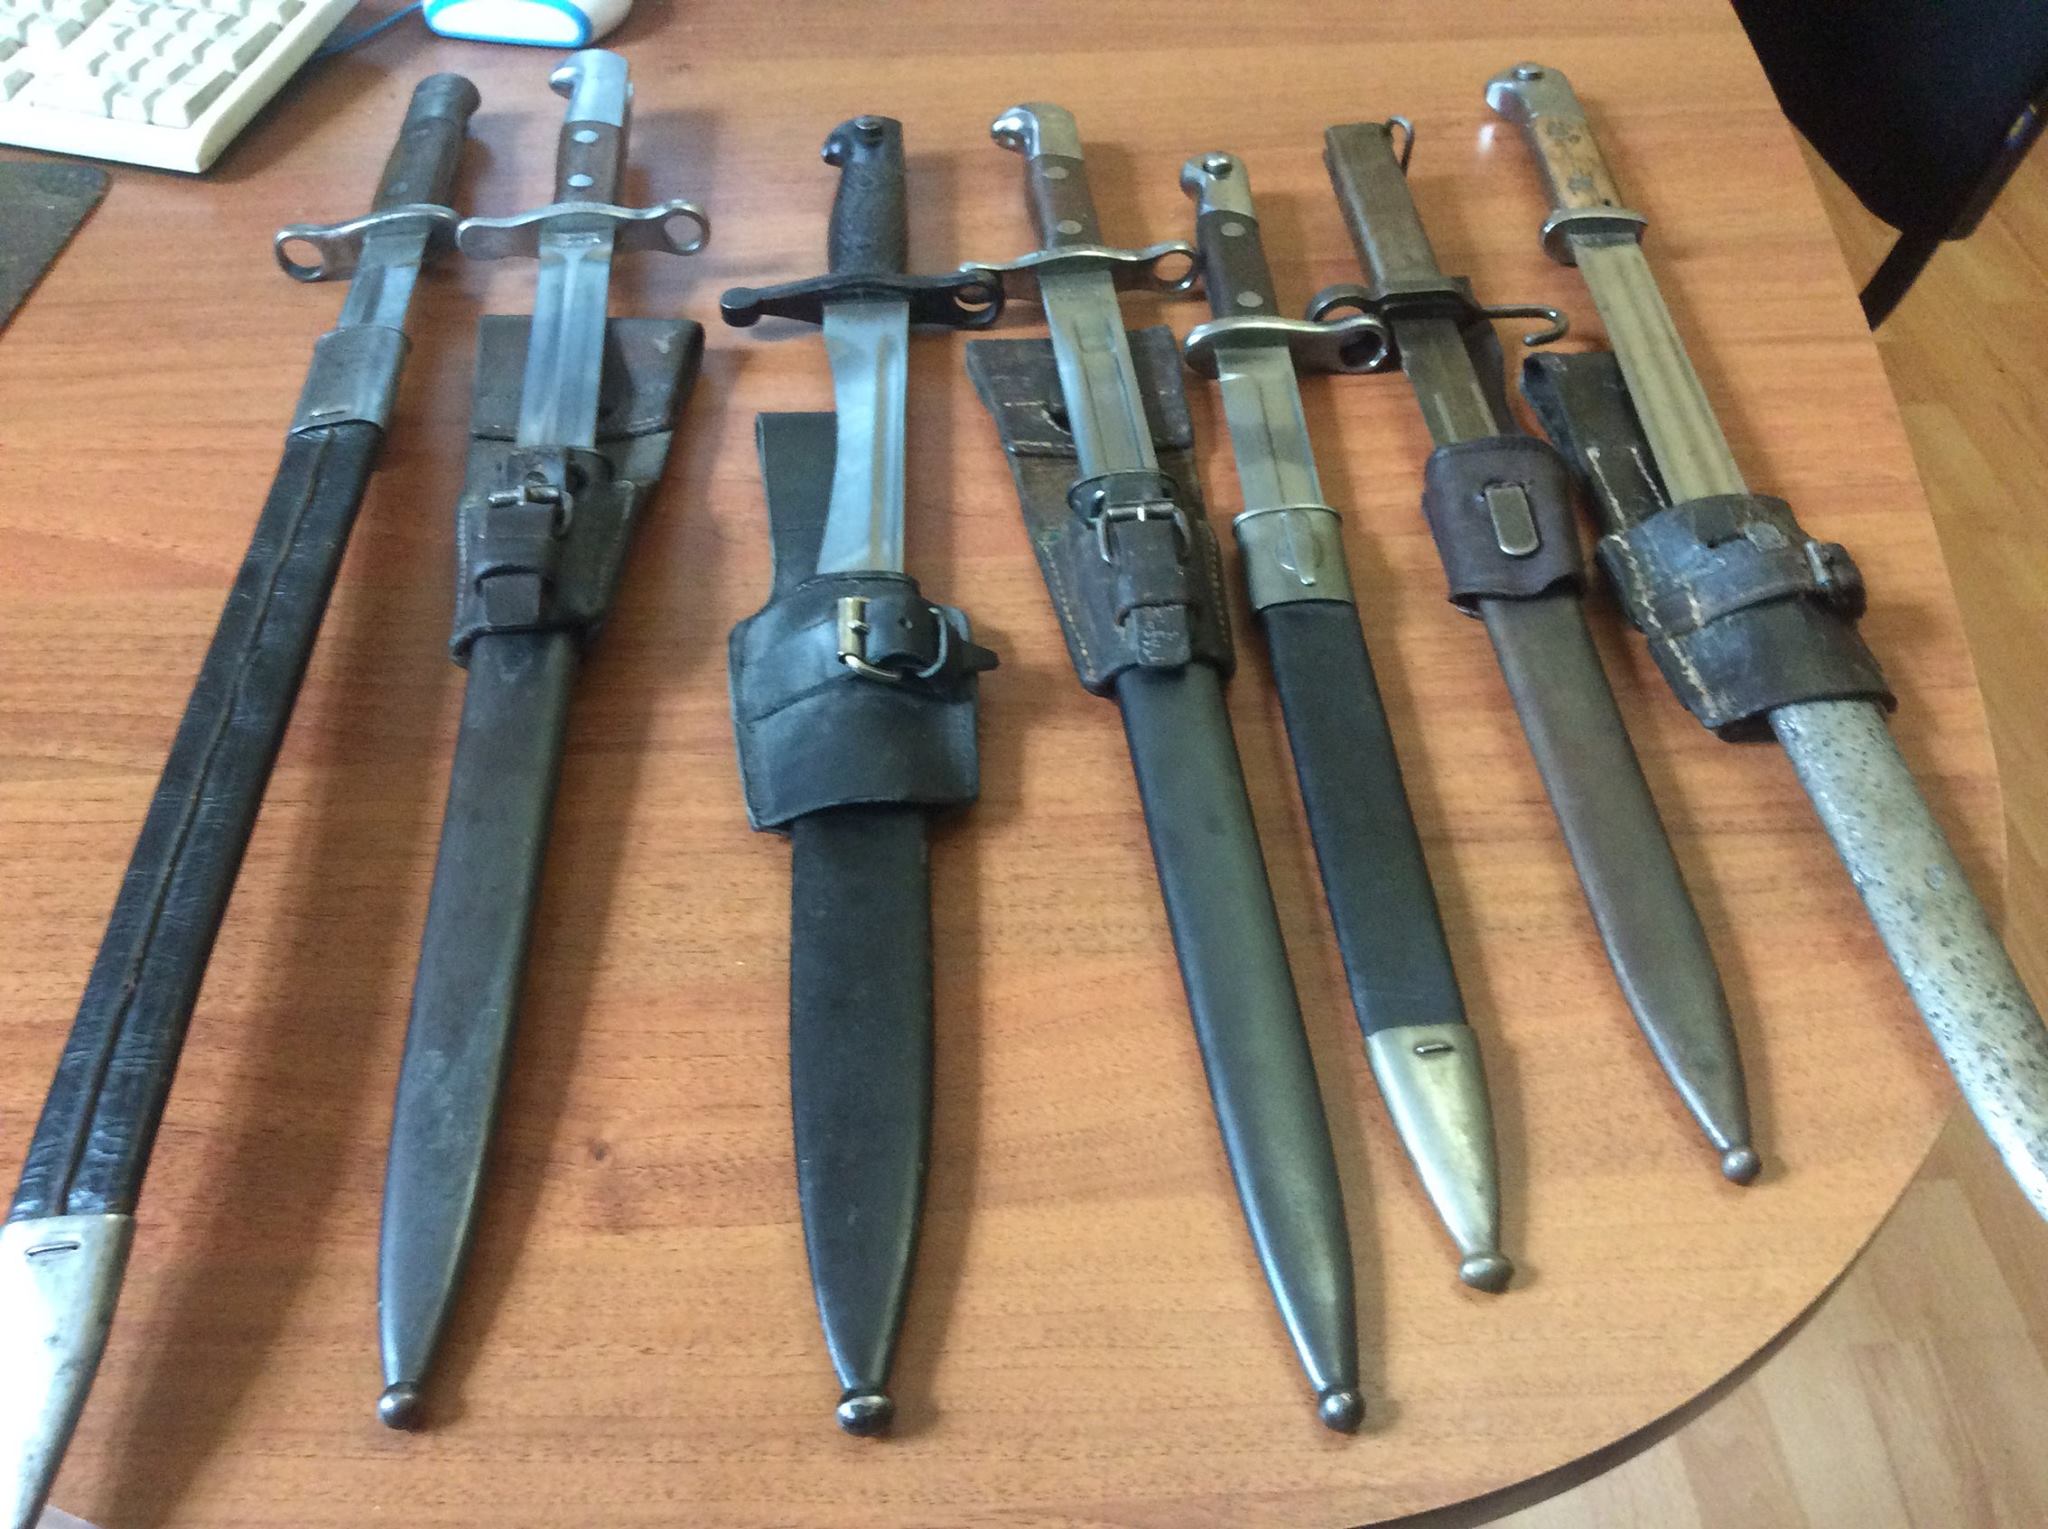 Зараз на Закарпатті, як і по всій Украіні триває місячник добровільної здачі зброї. Цим скористався 50-річний мукачівець, принісши в поліцію холодну зброю: сім штик-ножів.

